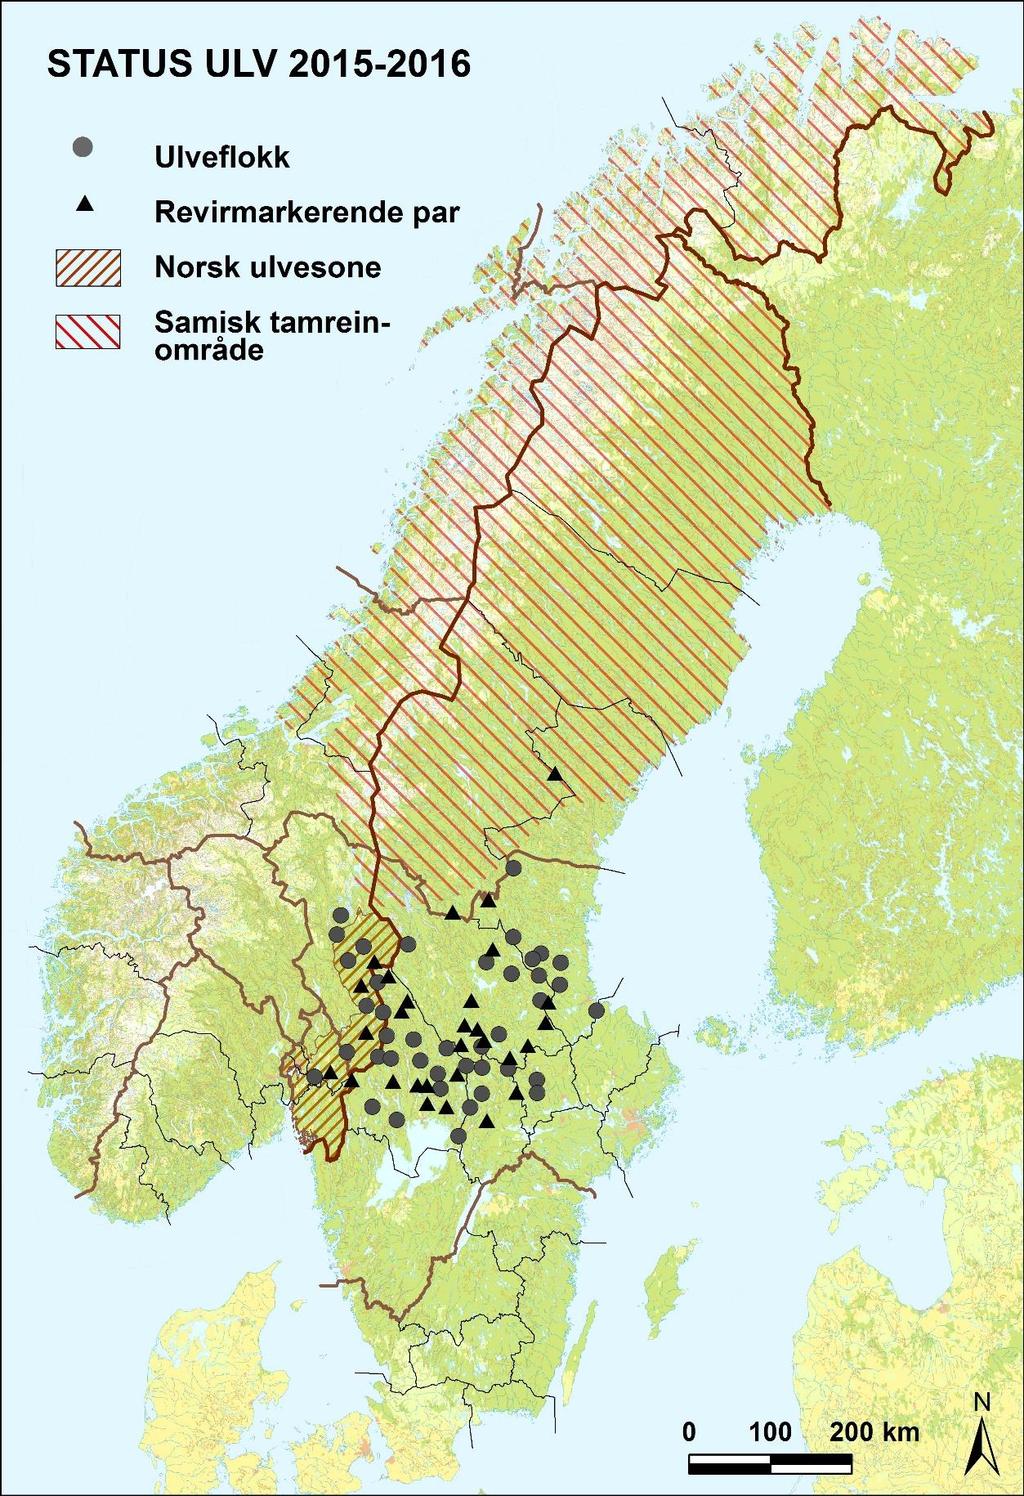 Figur 2. Utbredelsen av 70 stasjonære ulveflokker og par i Skandinavia vinteren 2015/2016 (Wabakken m.fl. 2016). Norsk ulvesone og beiteområde for samisk tamrein er også vist.